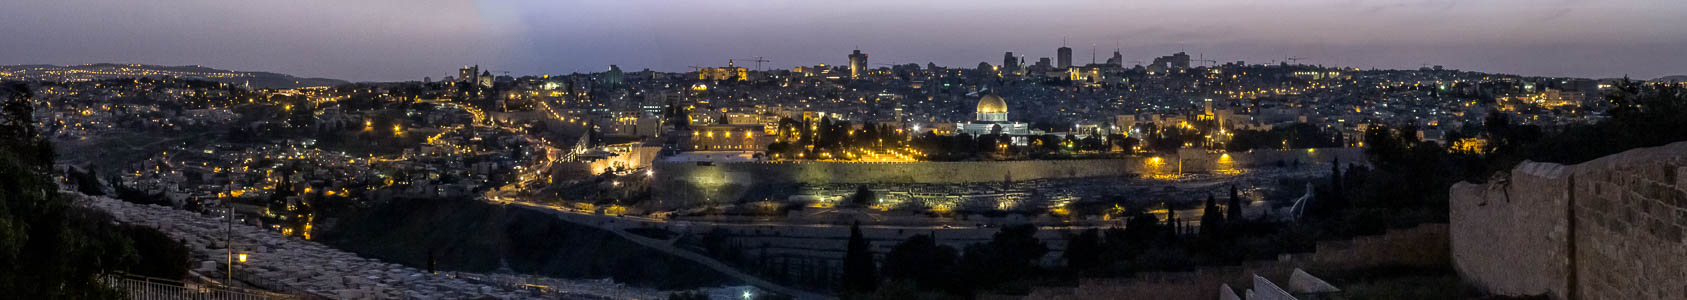 Blick vom Ölberg: Altstadt mit Tempelberg (Al-Aqsa-Moschee und Felsendom) Jerusalem